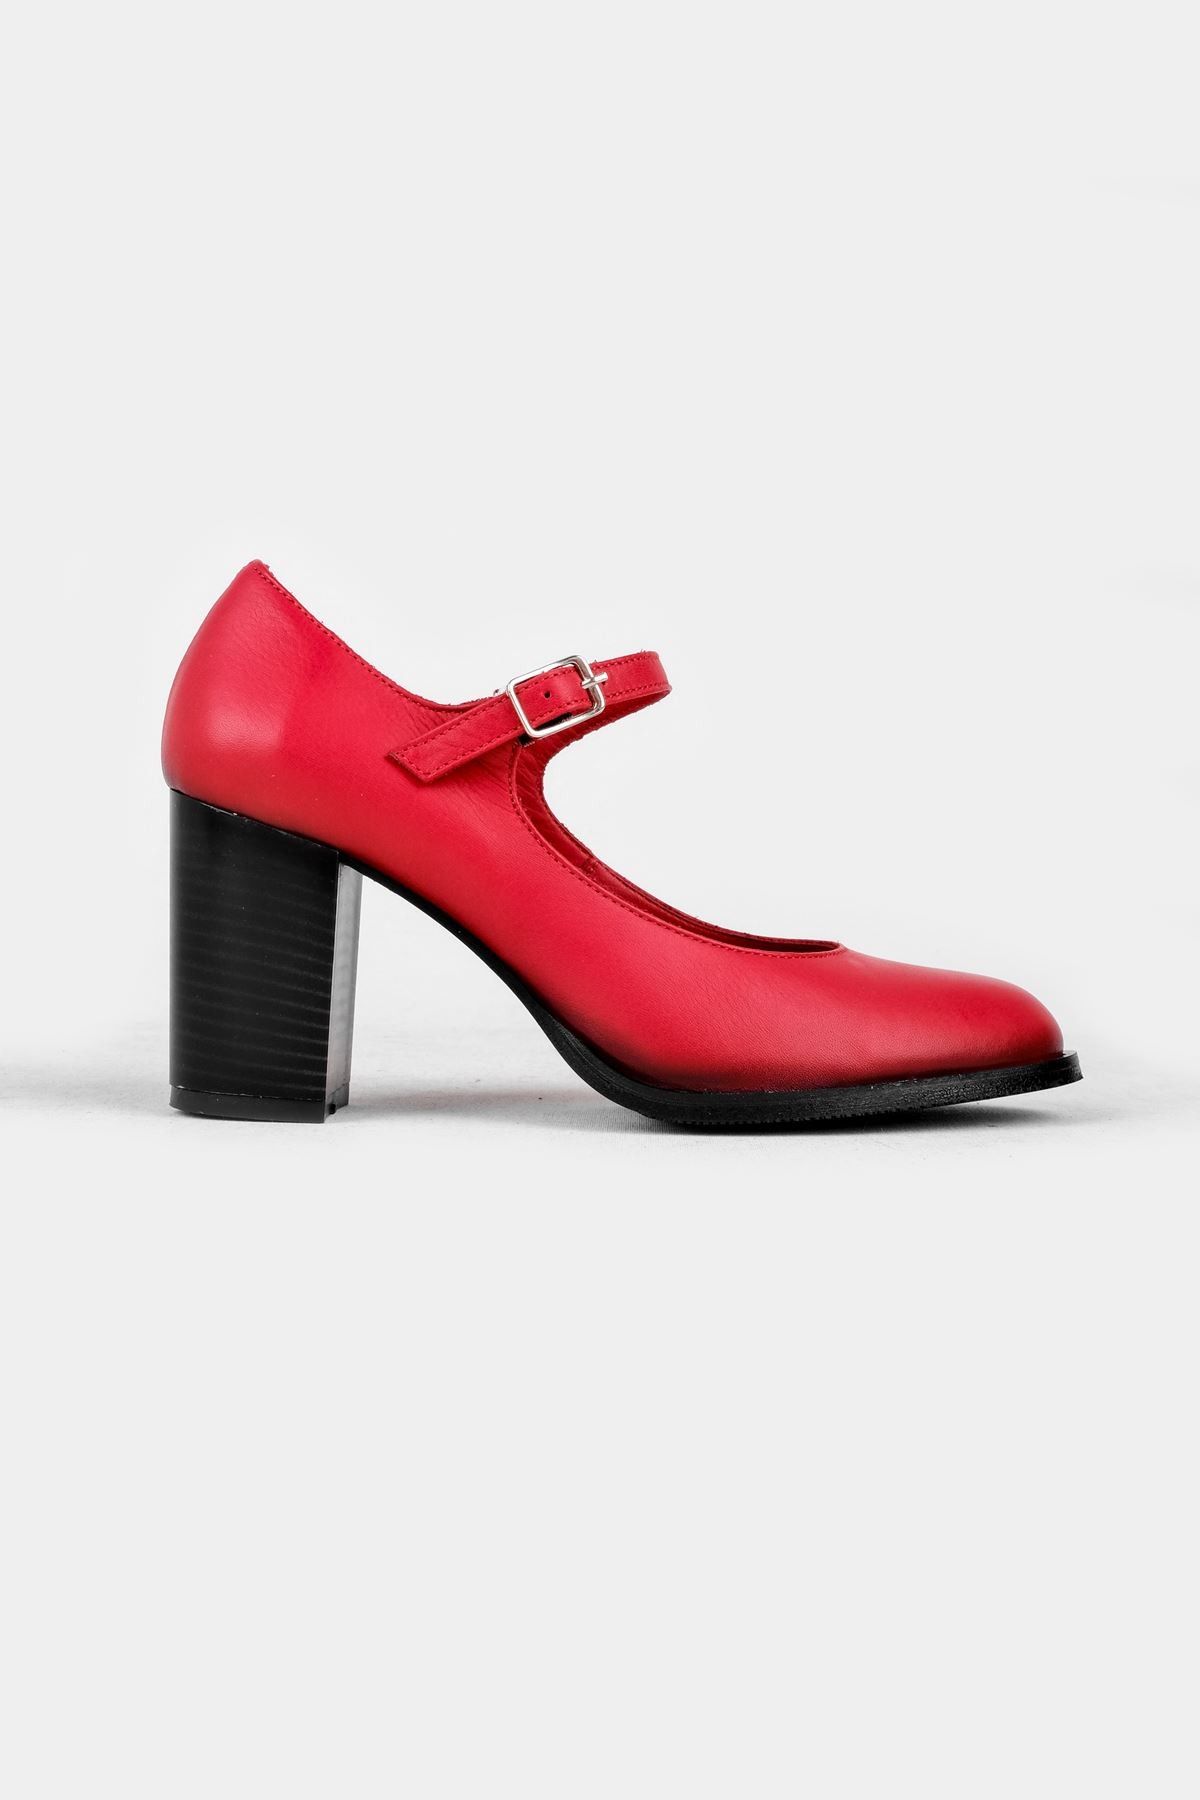 Sharoy Balerin Kadın Hakiki Deri Topuklu Ayakkabı- B2775 - Kırmızı